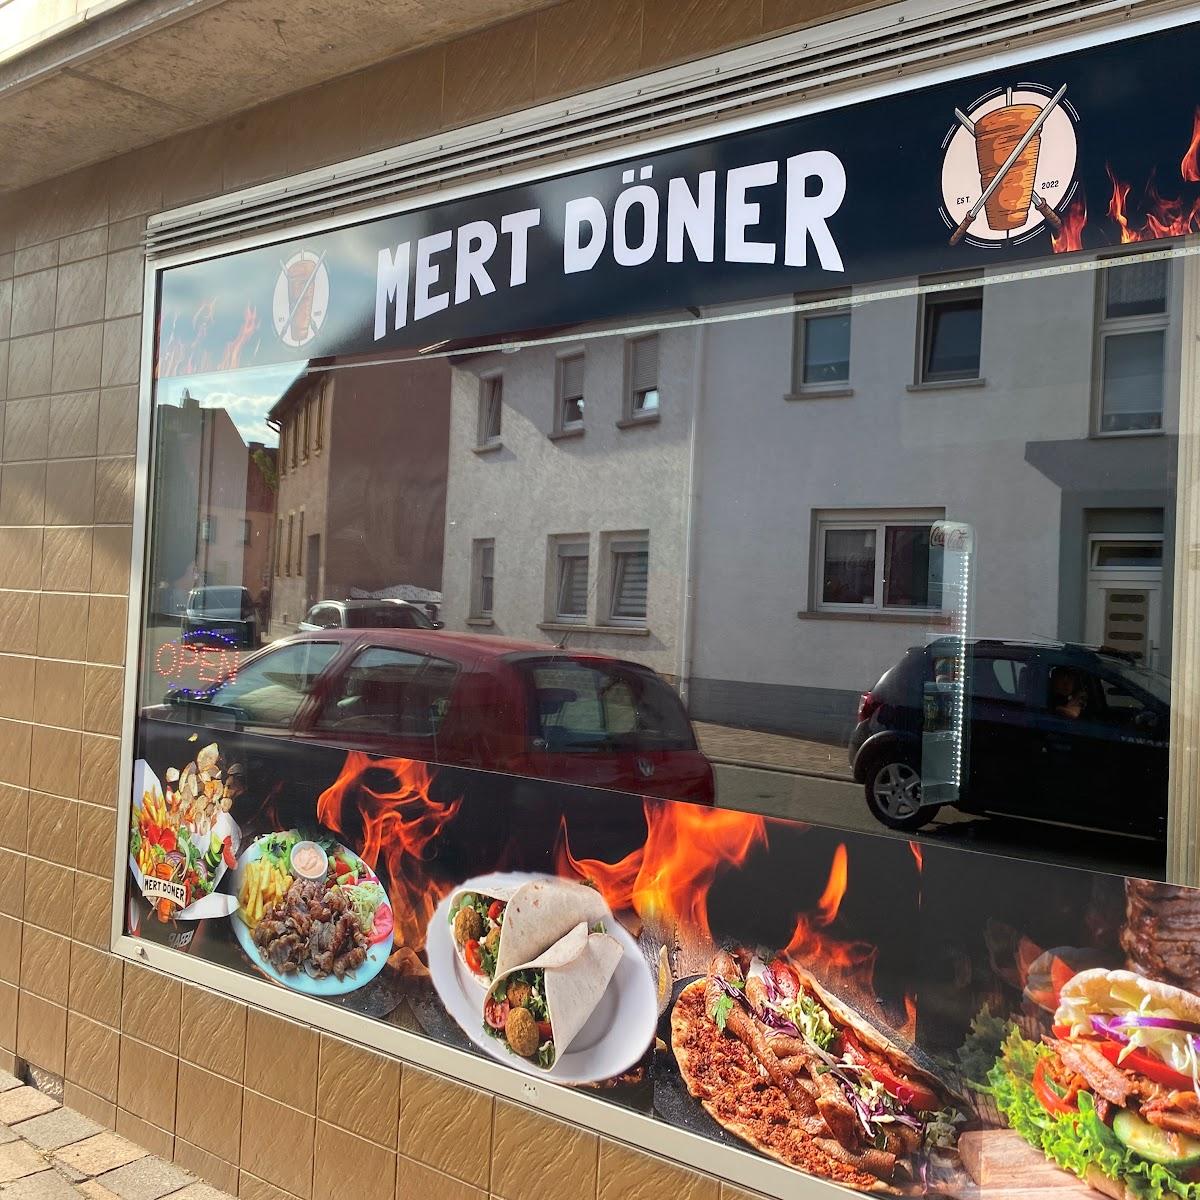 Restaurant "Mert Döner" in Hornbach